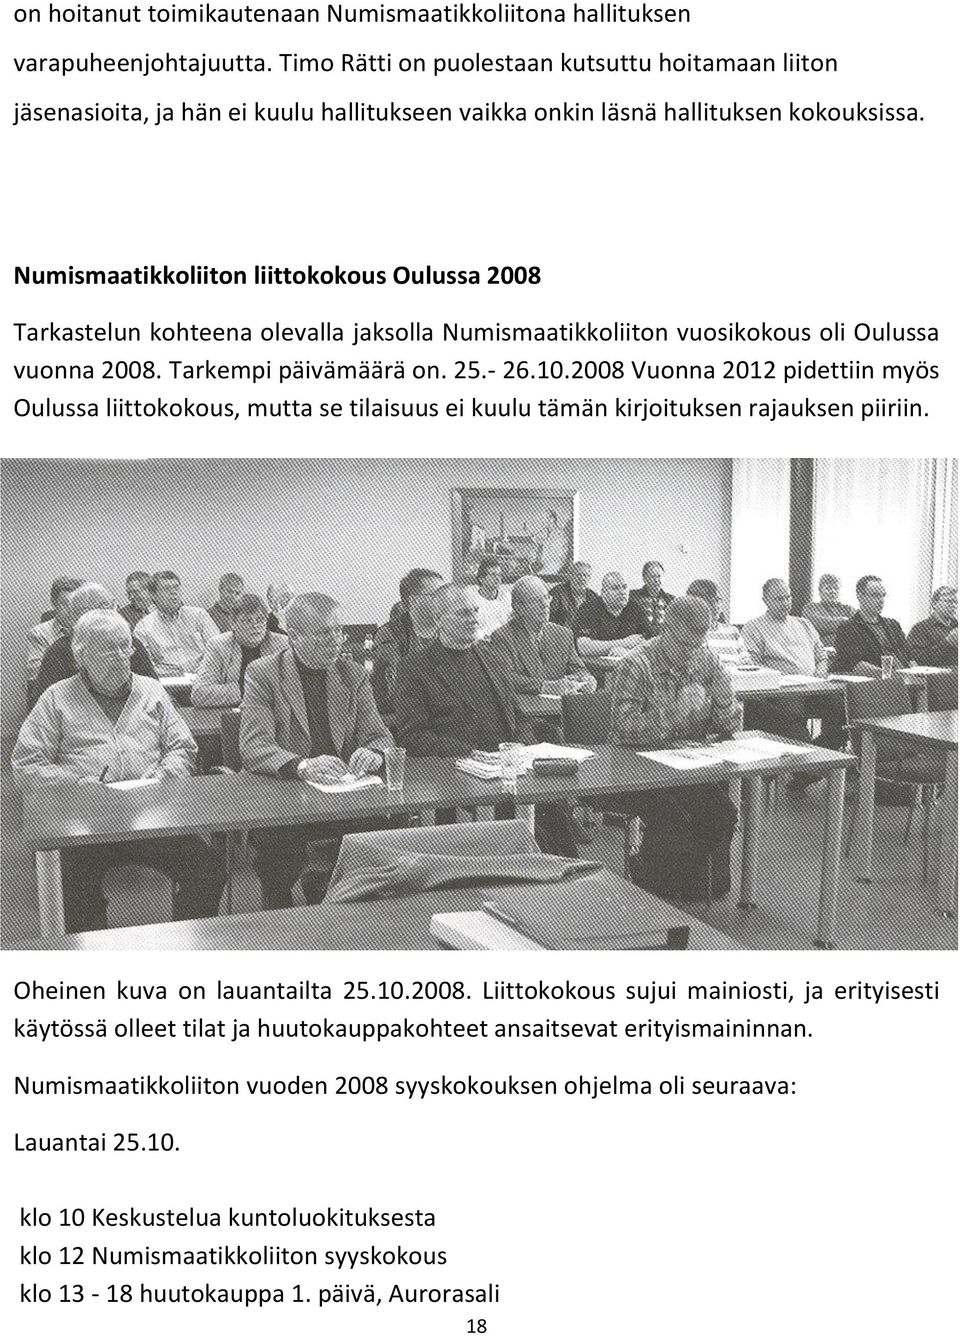 Numismaatikkoliiton liittokokous Oulussa 2008 Tarkastelun kohteena olevalla jaksolla Numismaatikkoliiton vuosikokous oli Oulussa vuonna 2008. Tarkempi päivämäärä on. 25.- 26.10.